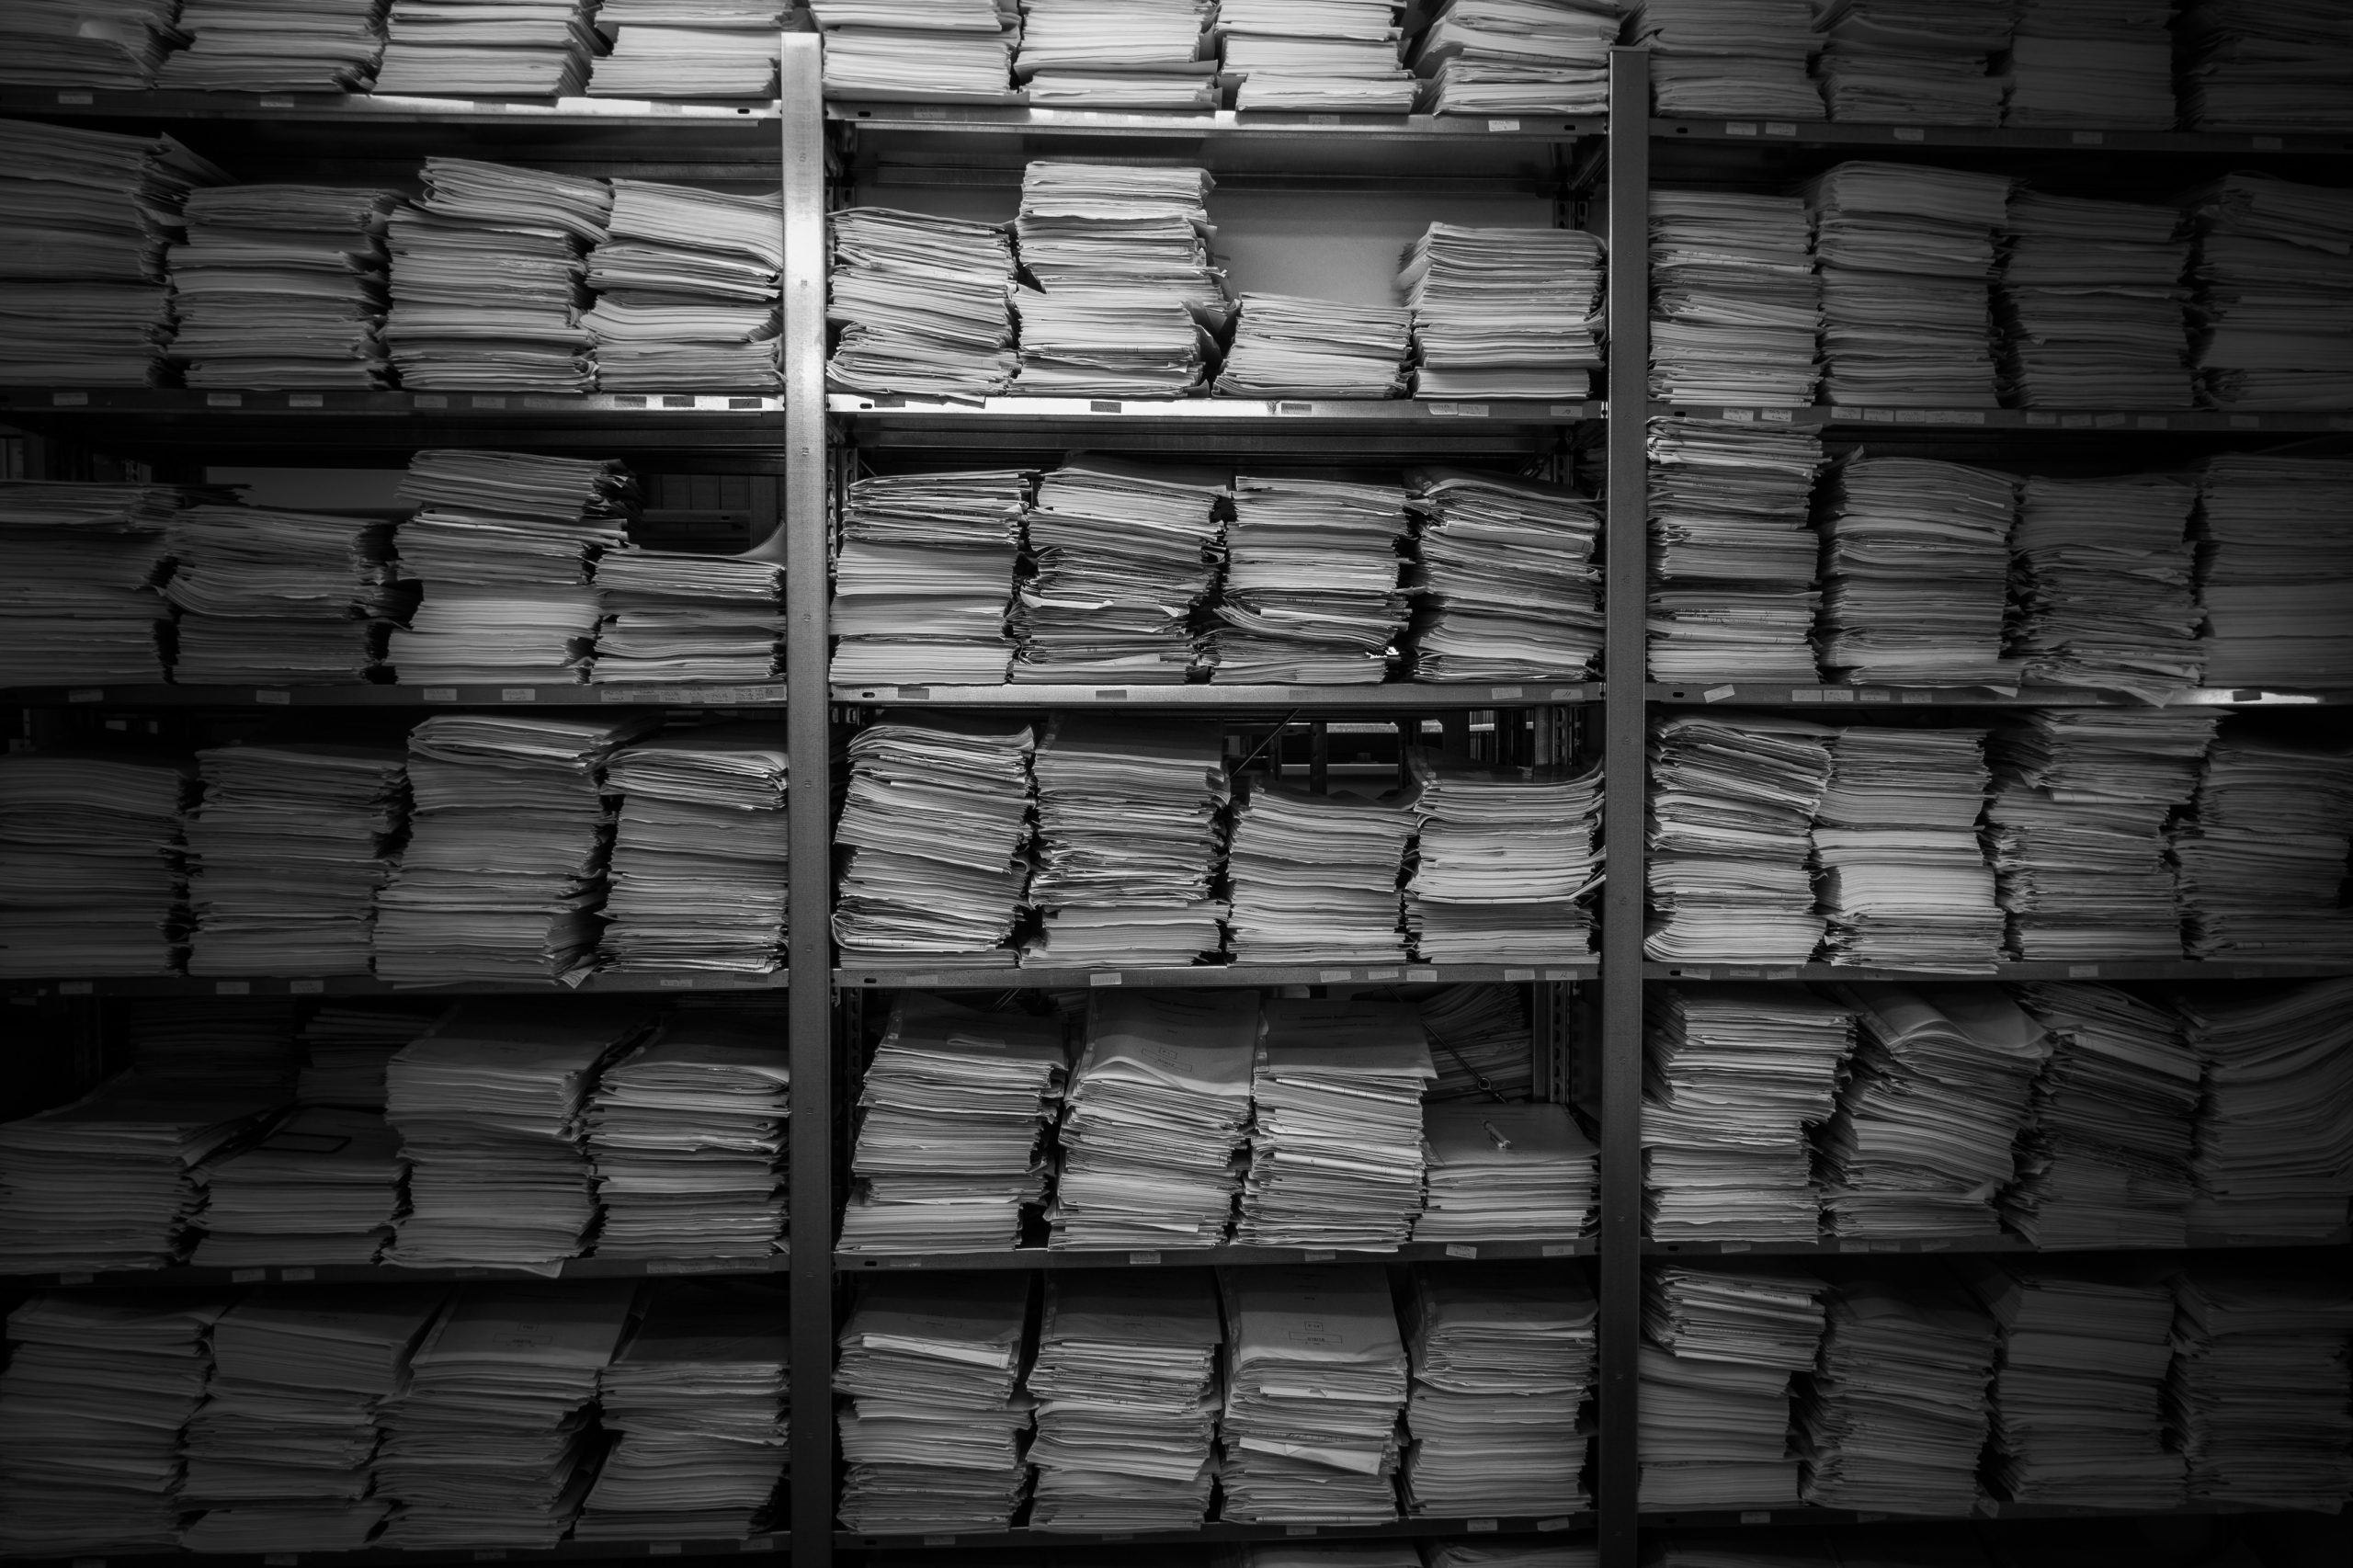 Archiveren van duizenden documenten lukt binnen drie weken